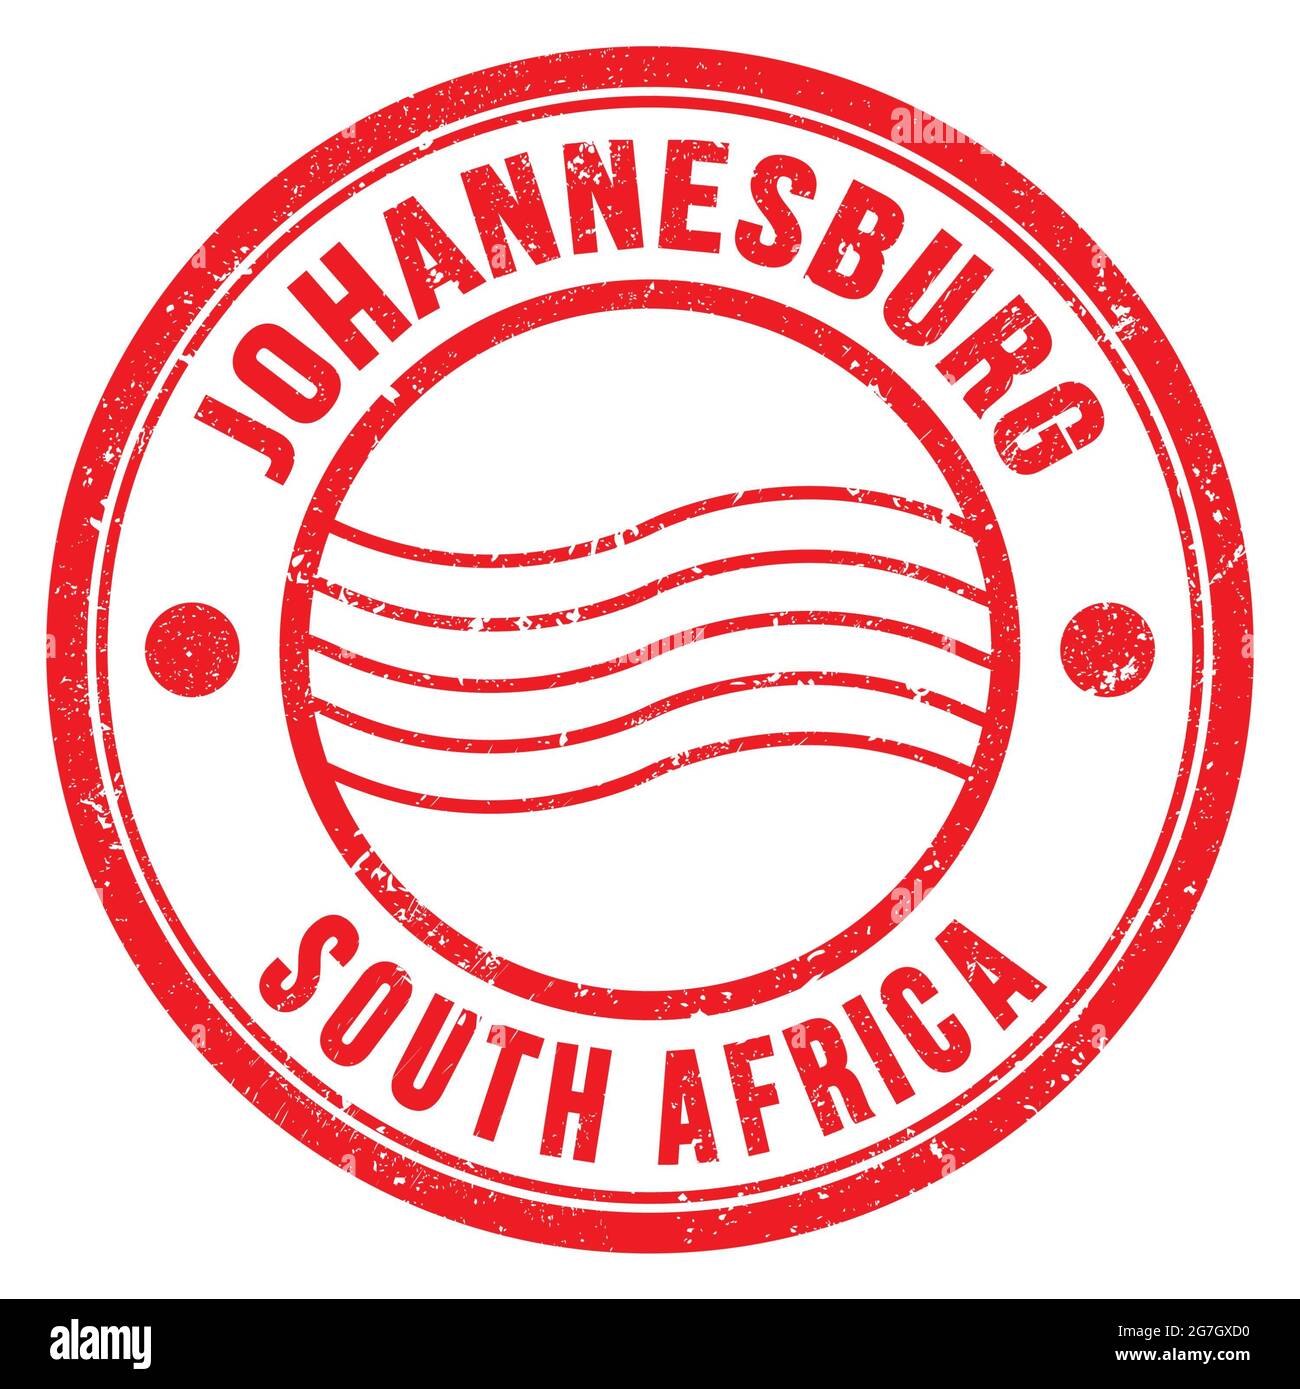 JOHANNESBURG - SÜDAFRIKA, Worte auf roter runder Briefmarke geschrieben Stockfoto